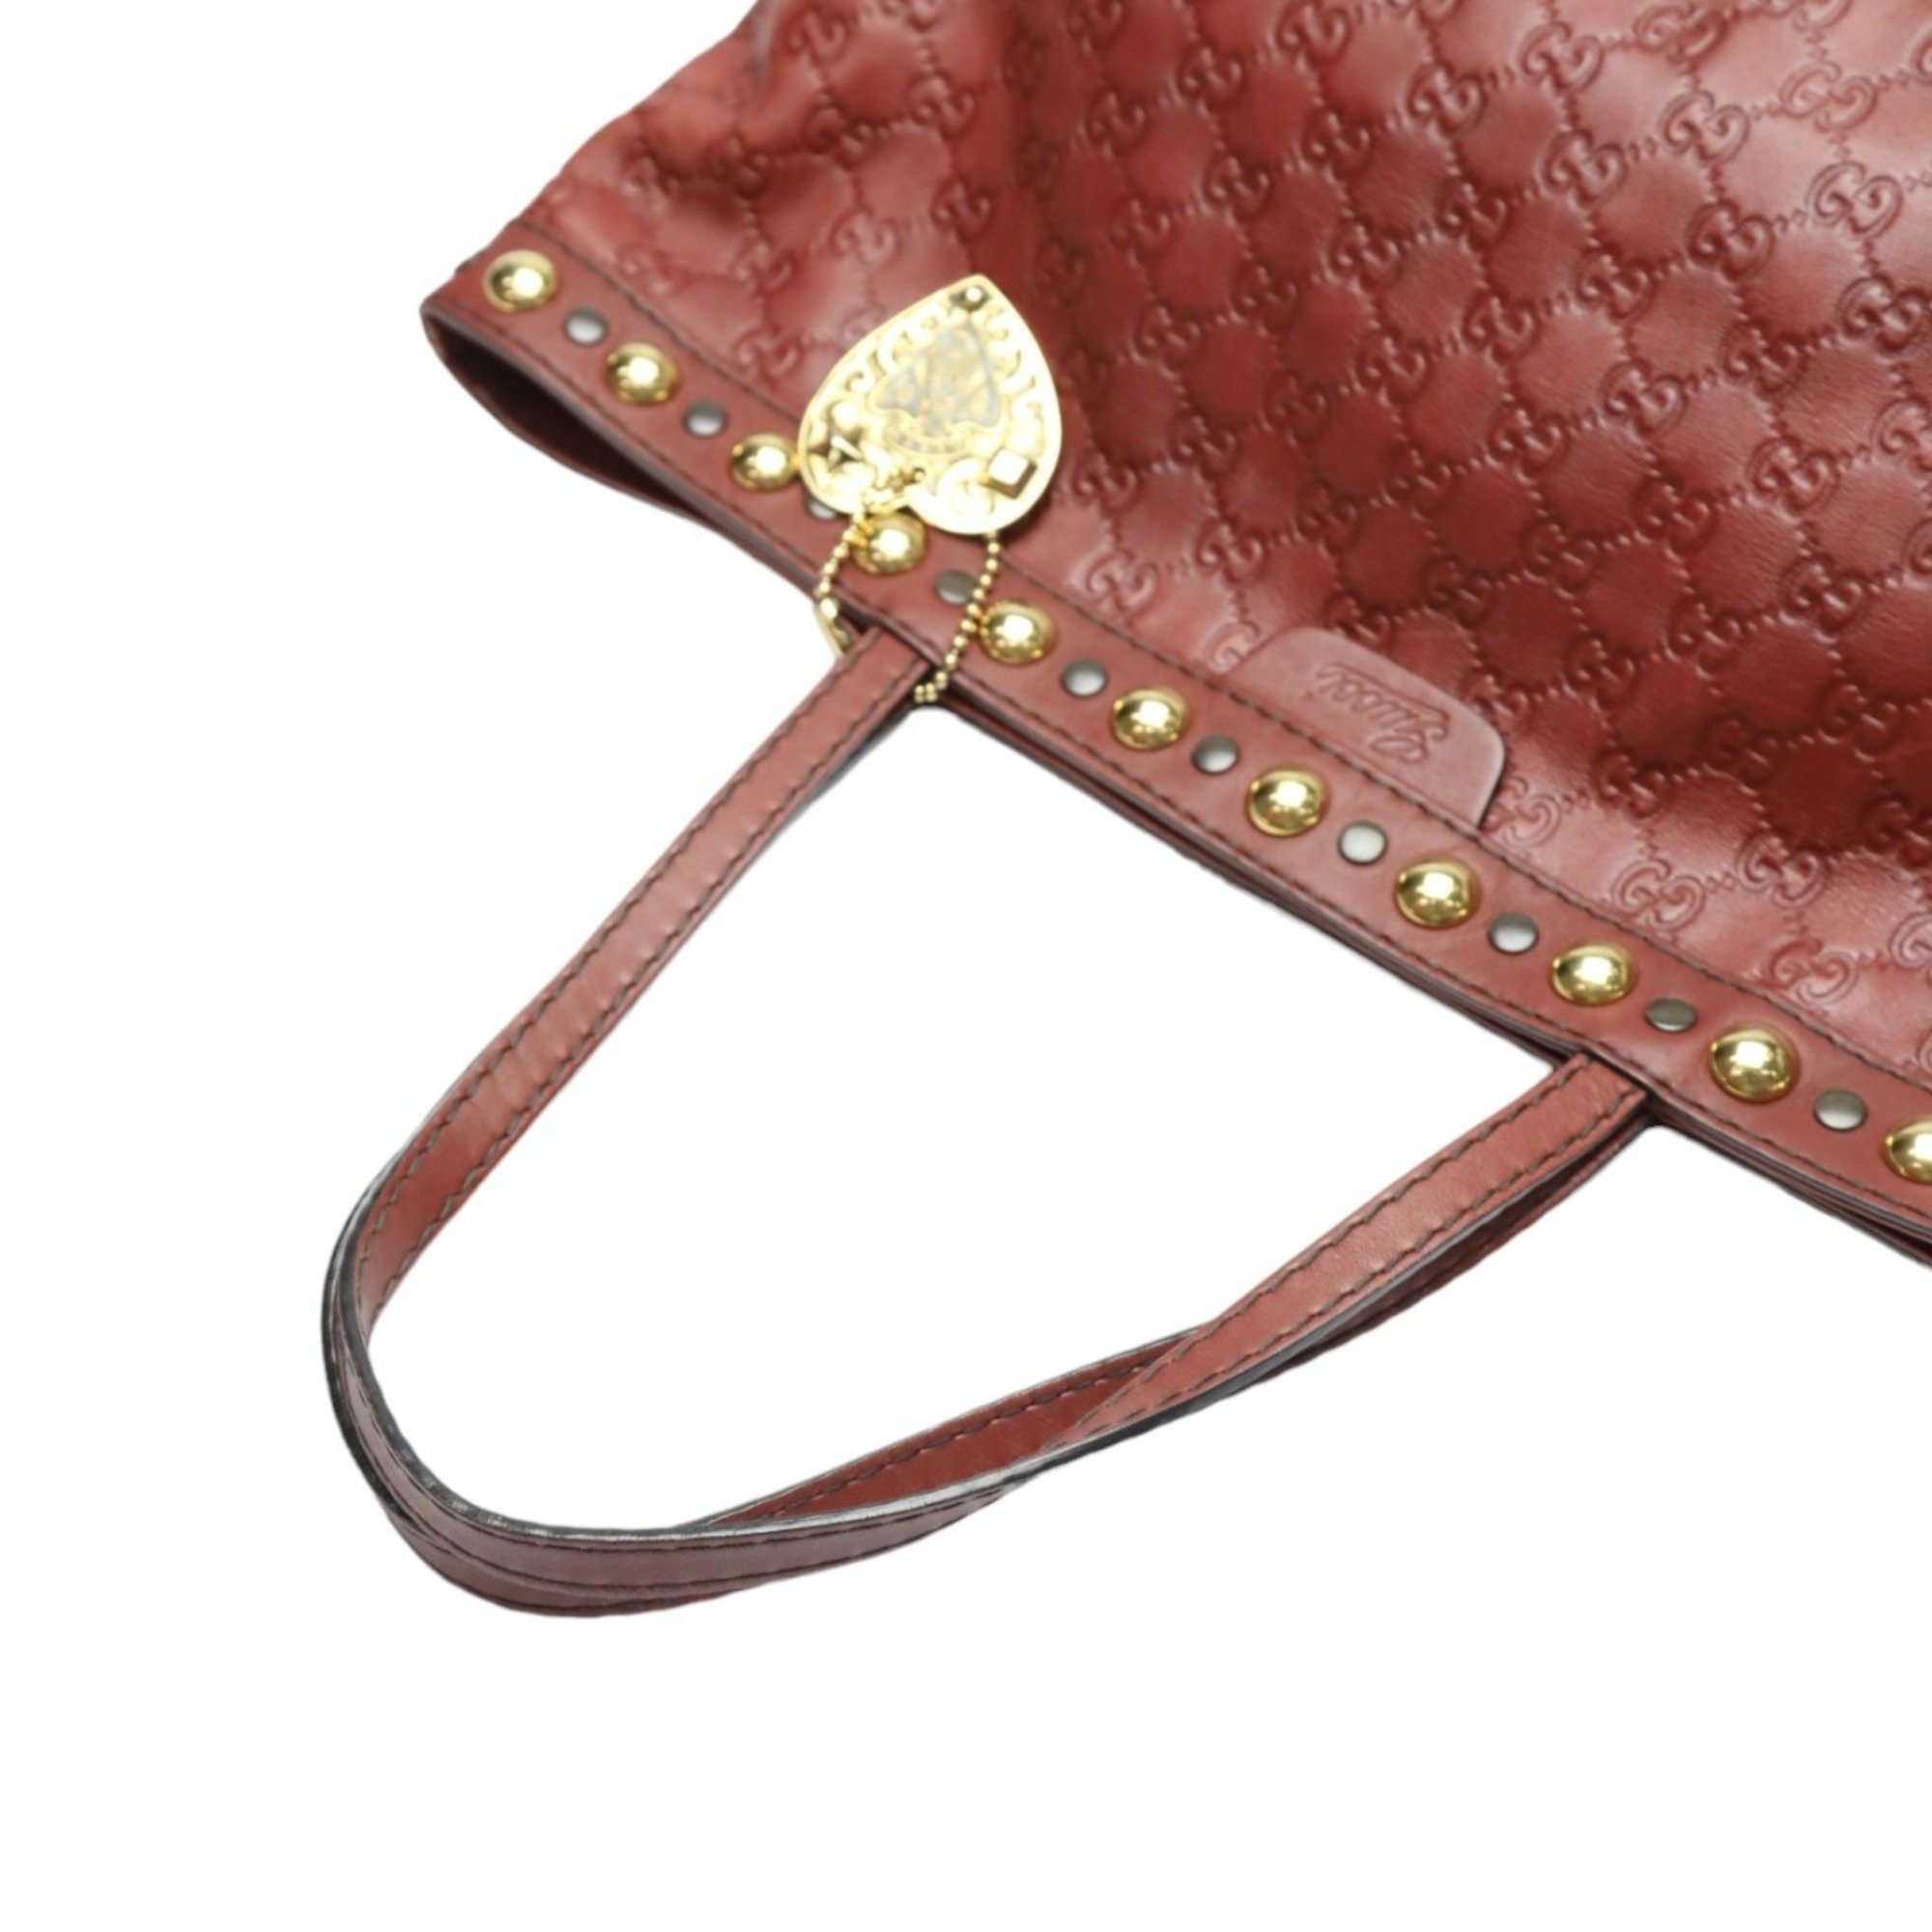 GUCCI Tote Bag Handbag Guccissima 207291 Leather Red